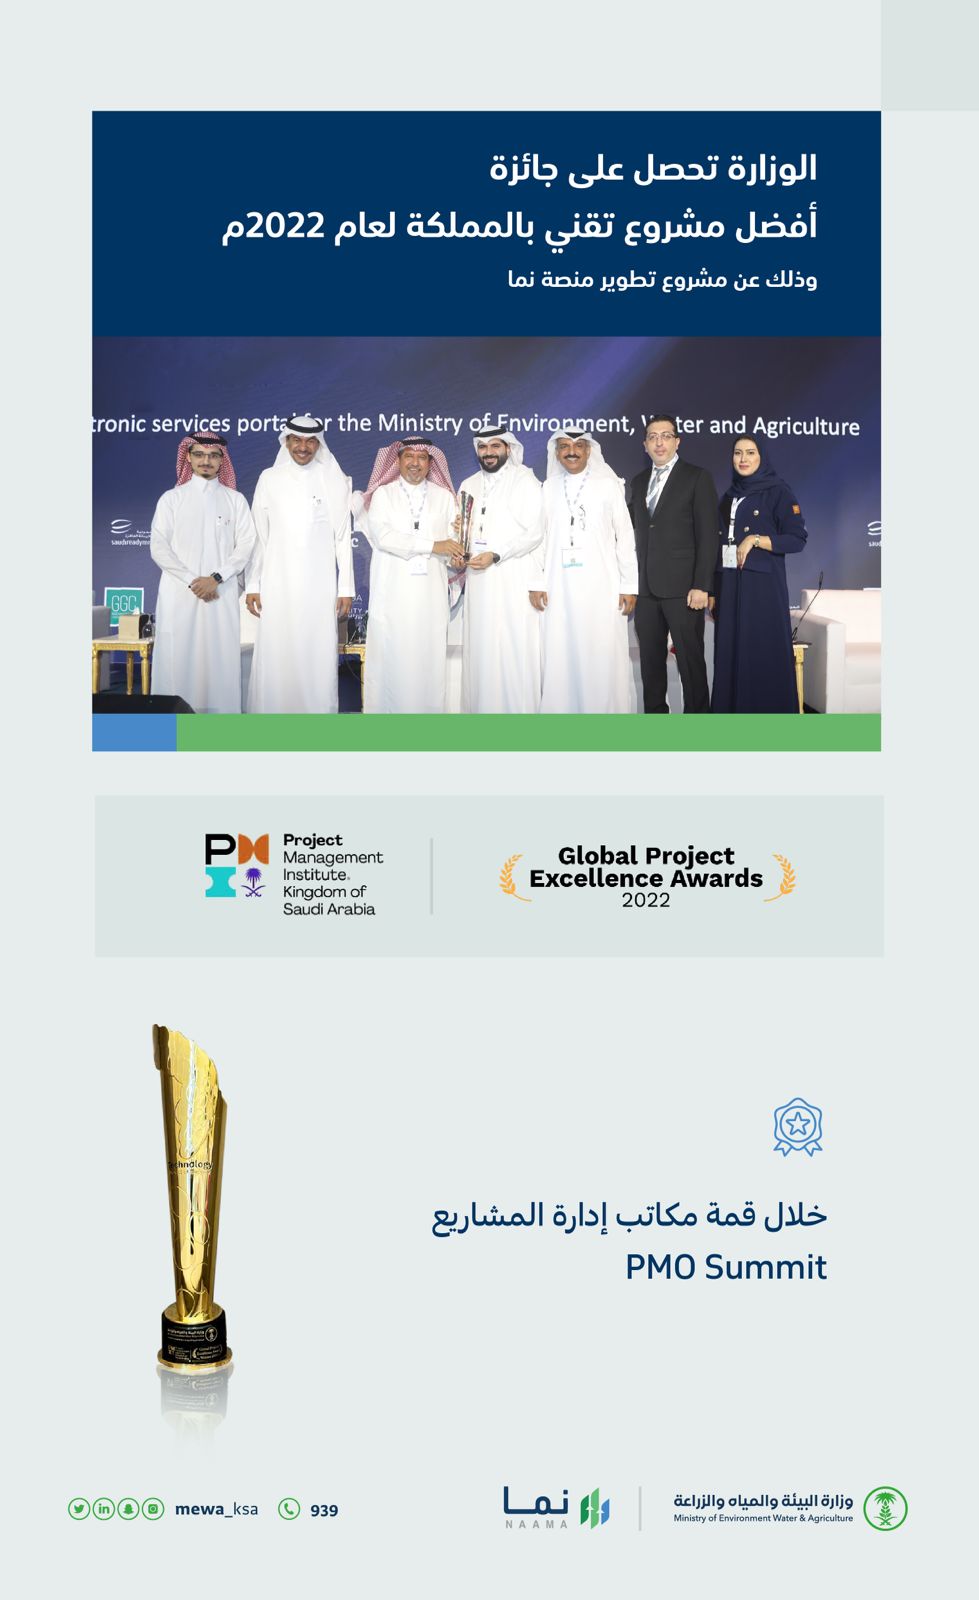 “البيئة” تحصل على جائزة أفضل مشروع تقني بالمملكة لعام 2022